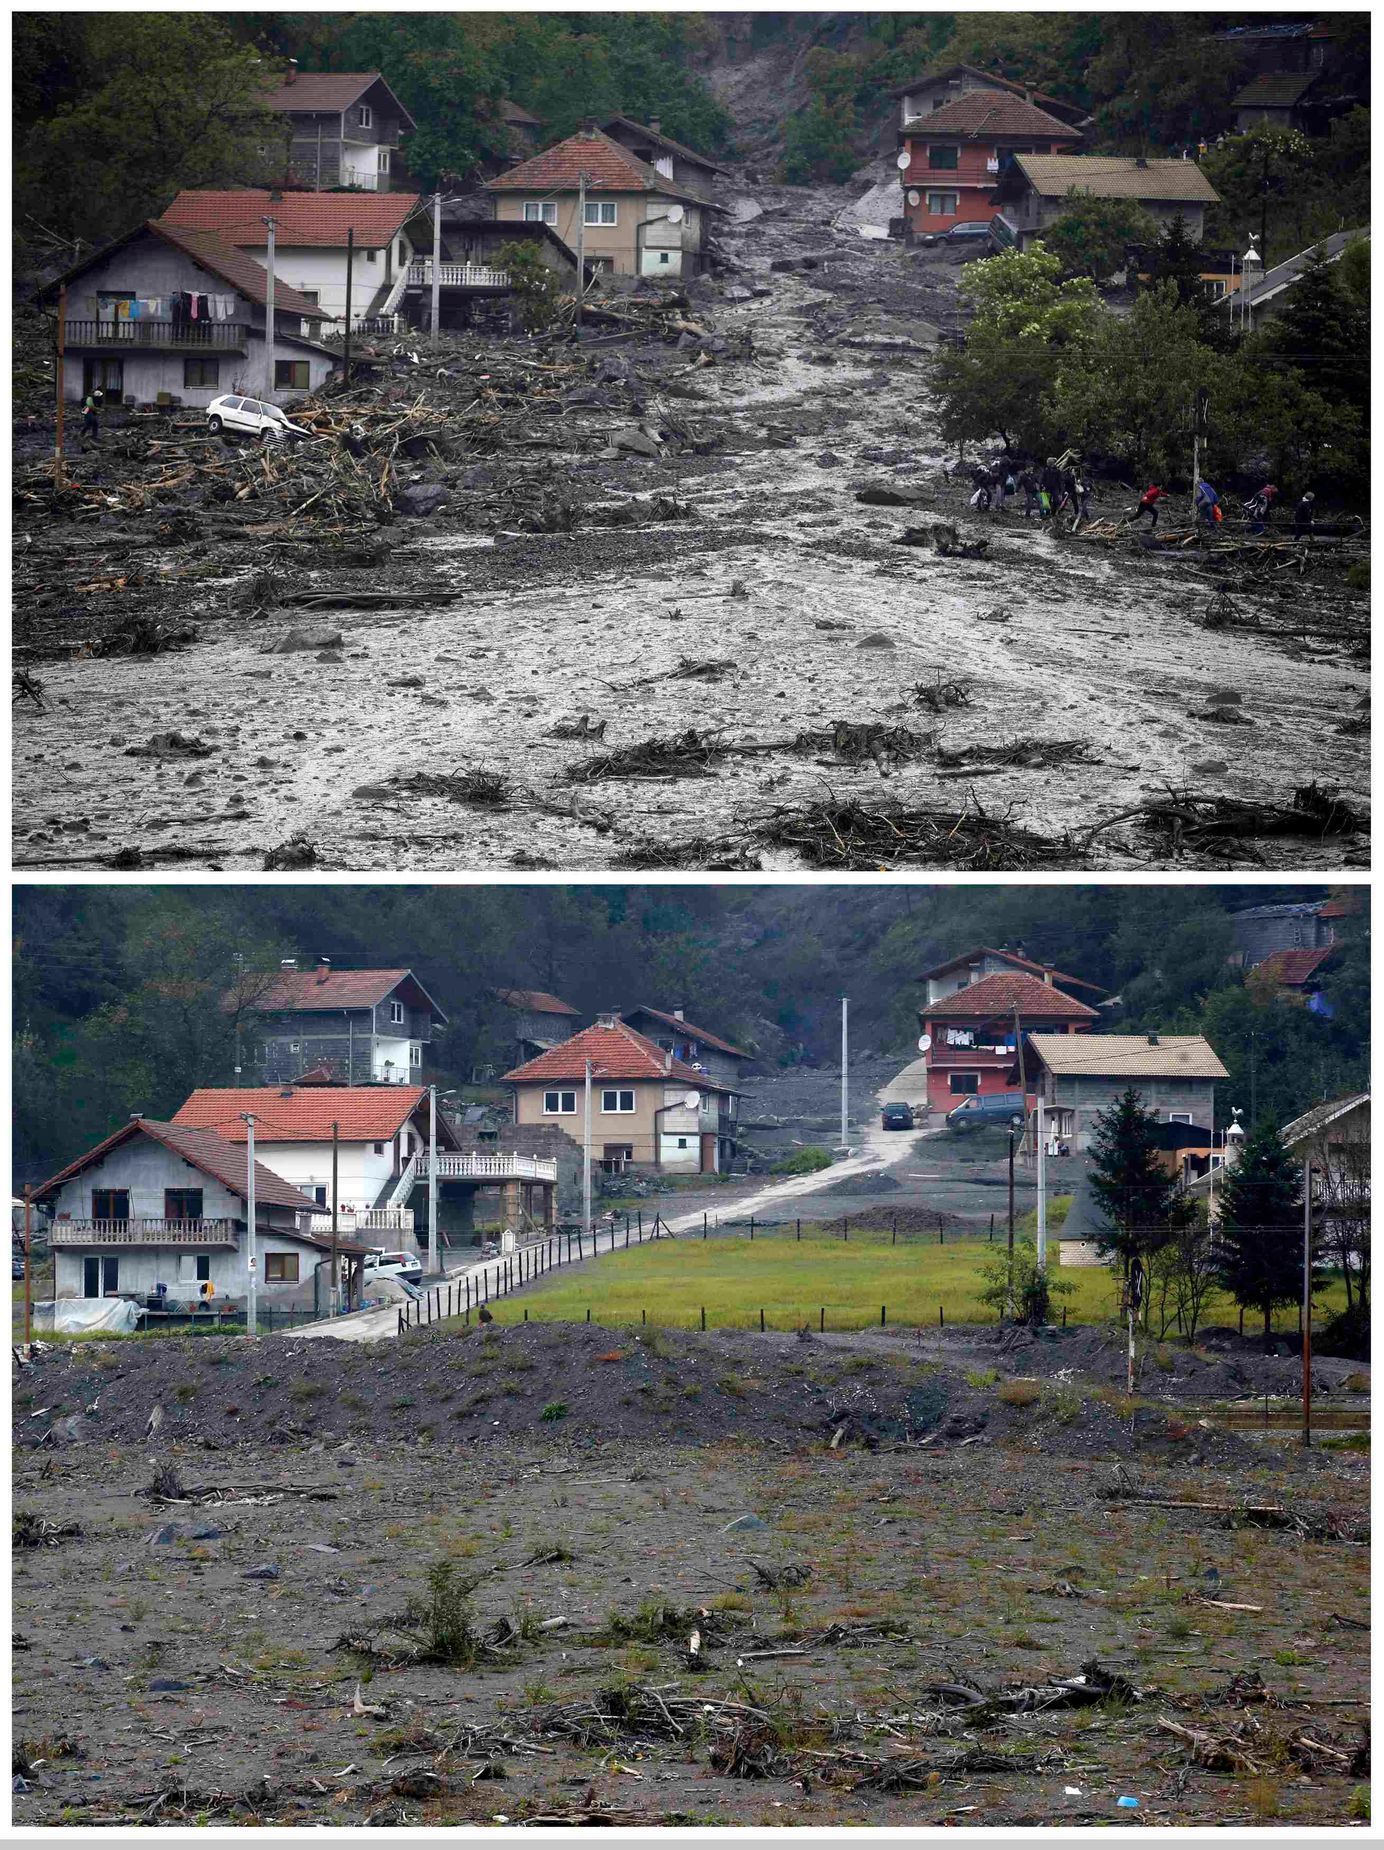 Bosna povodně 2014